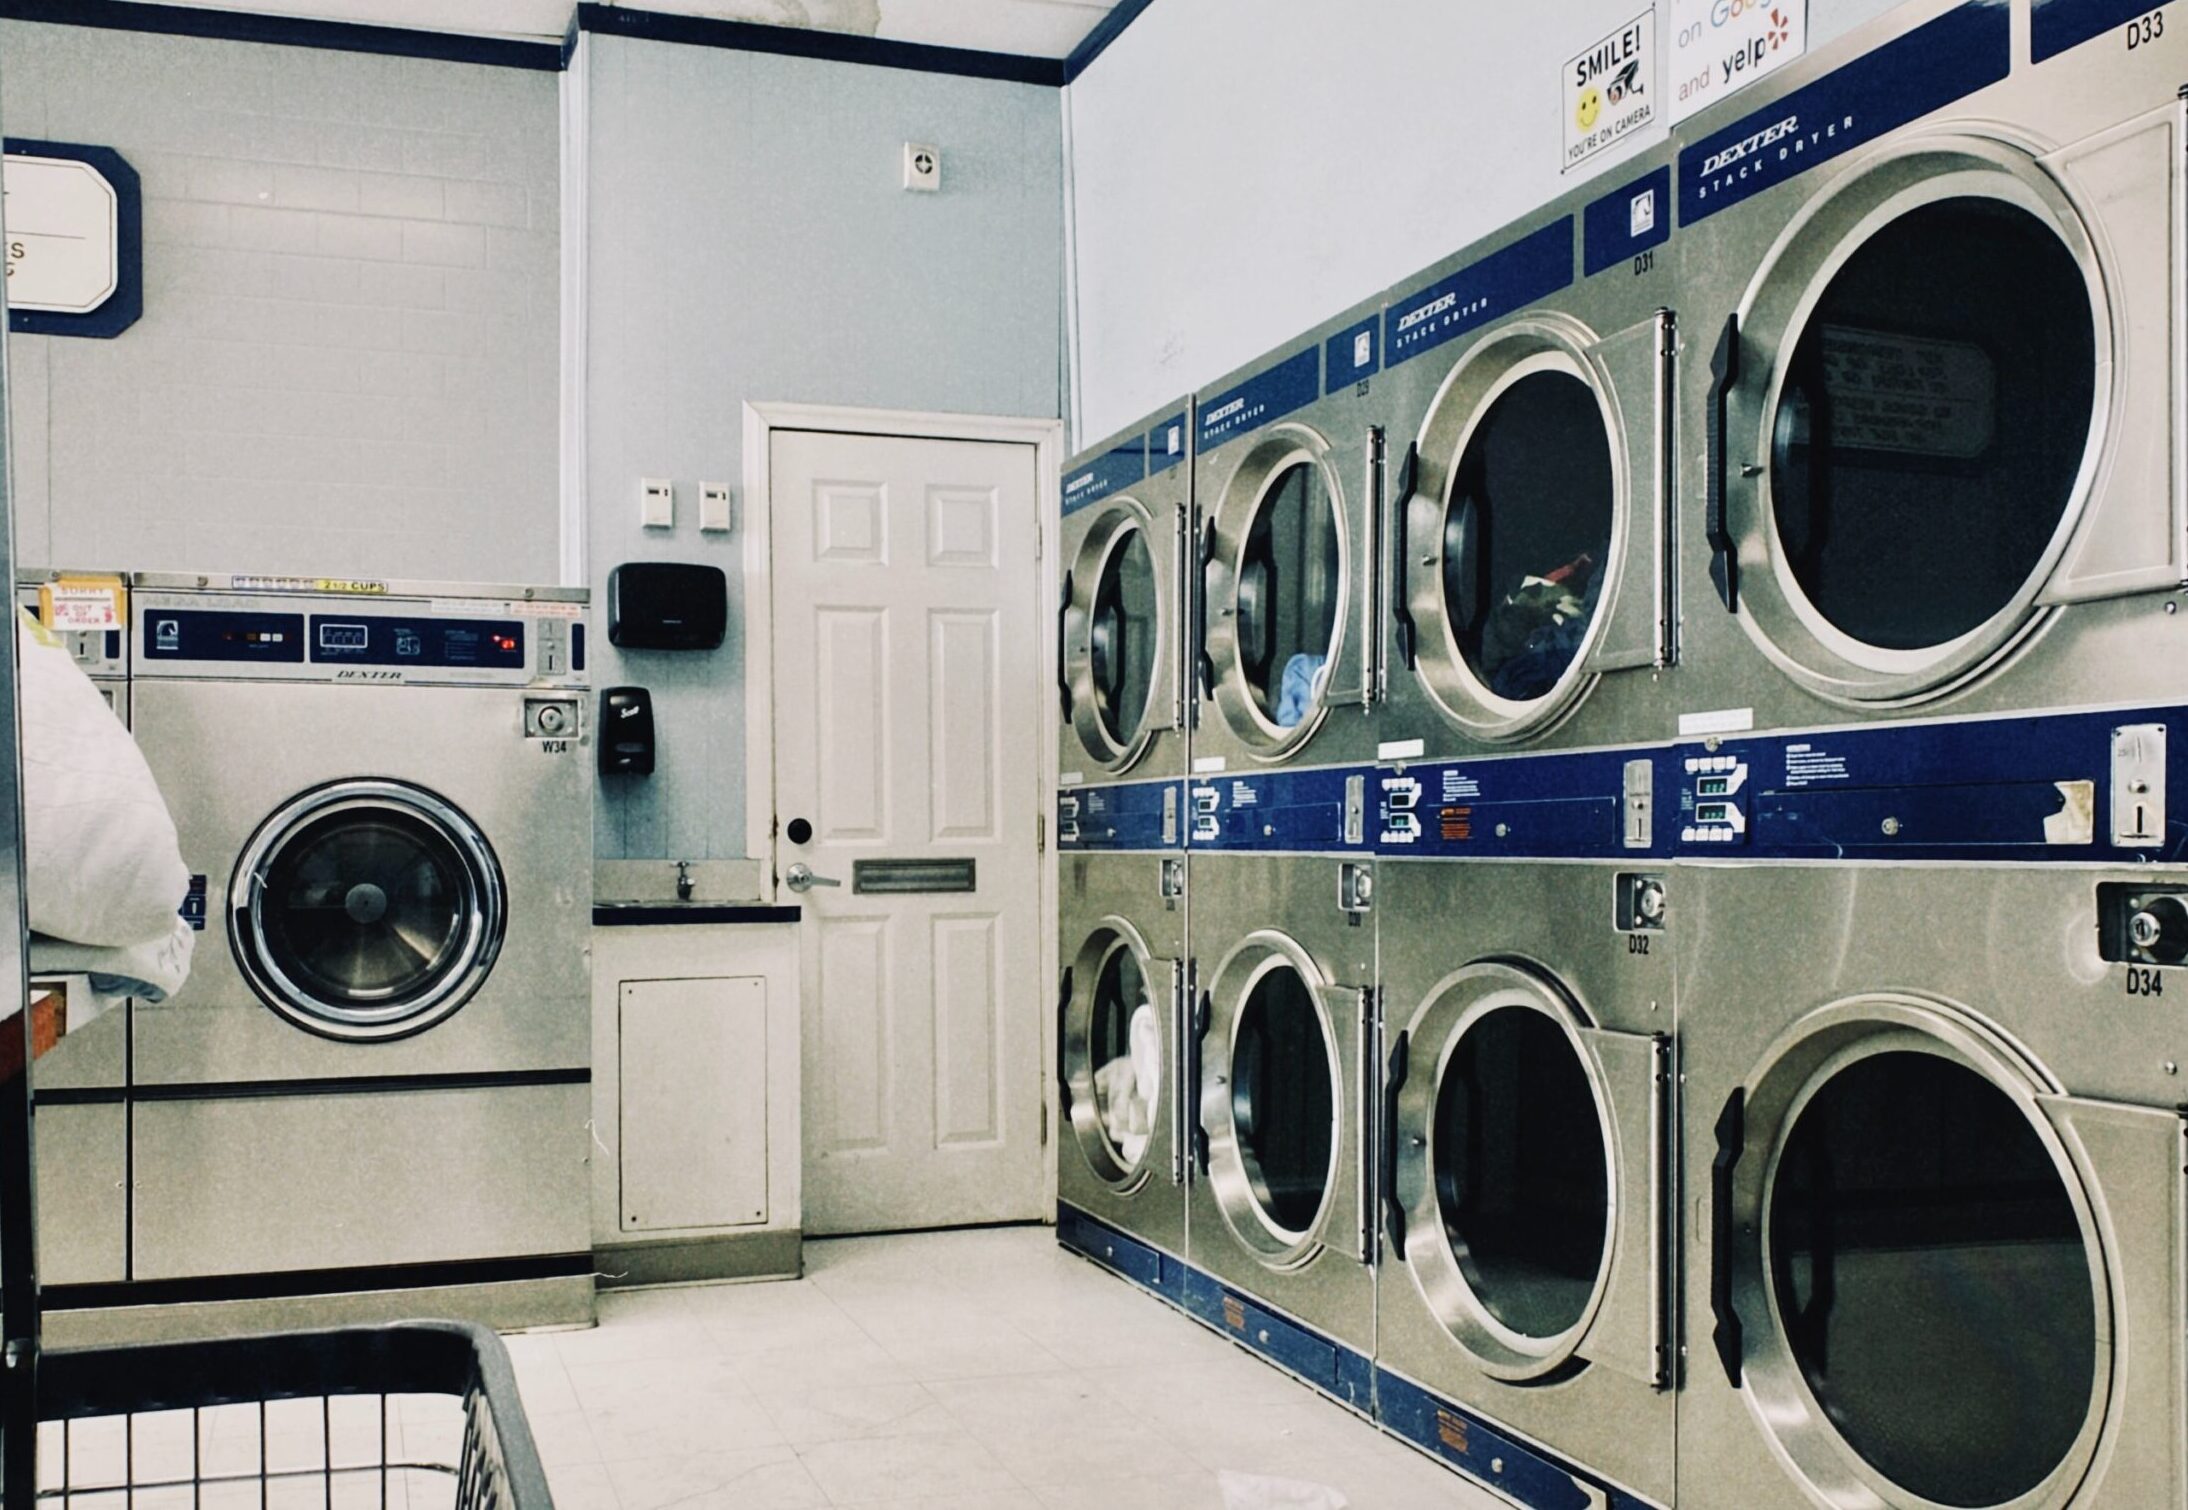 The Laundry Box, cea mai bună spălătorie de lenjerii, haine și covoare din Constanța oferă acum și servicii de curățenie la cele mai înalte standarde ale profesionalismului